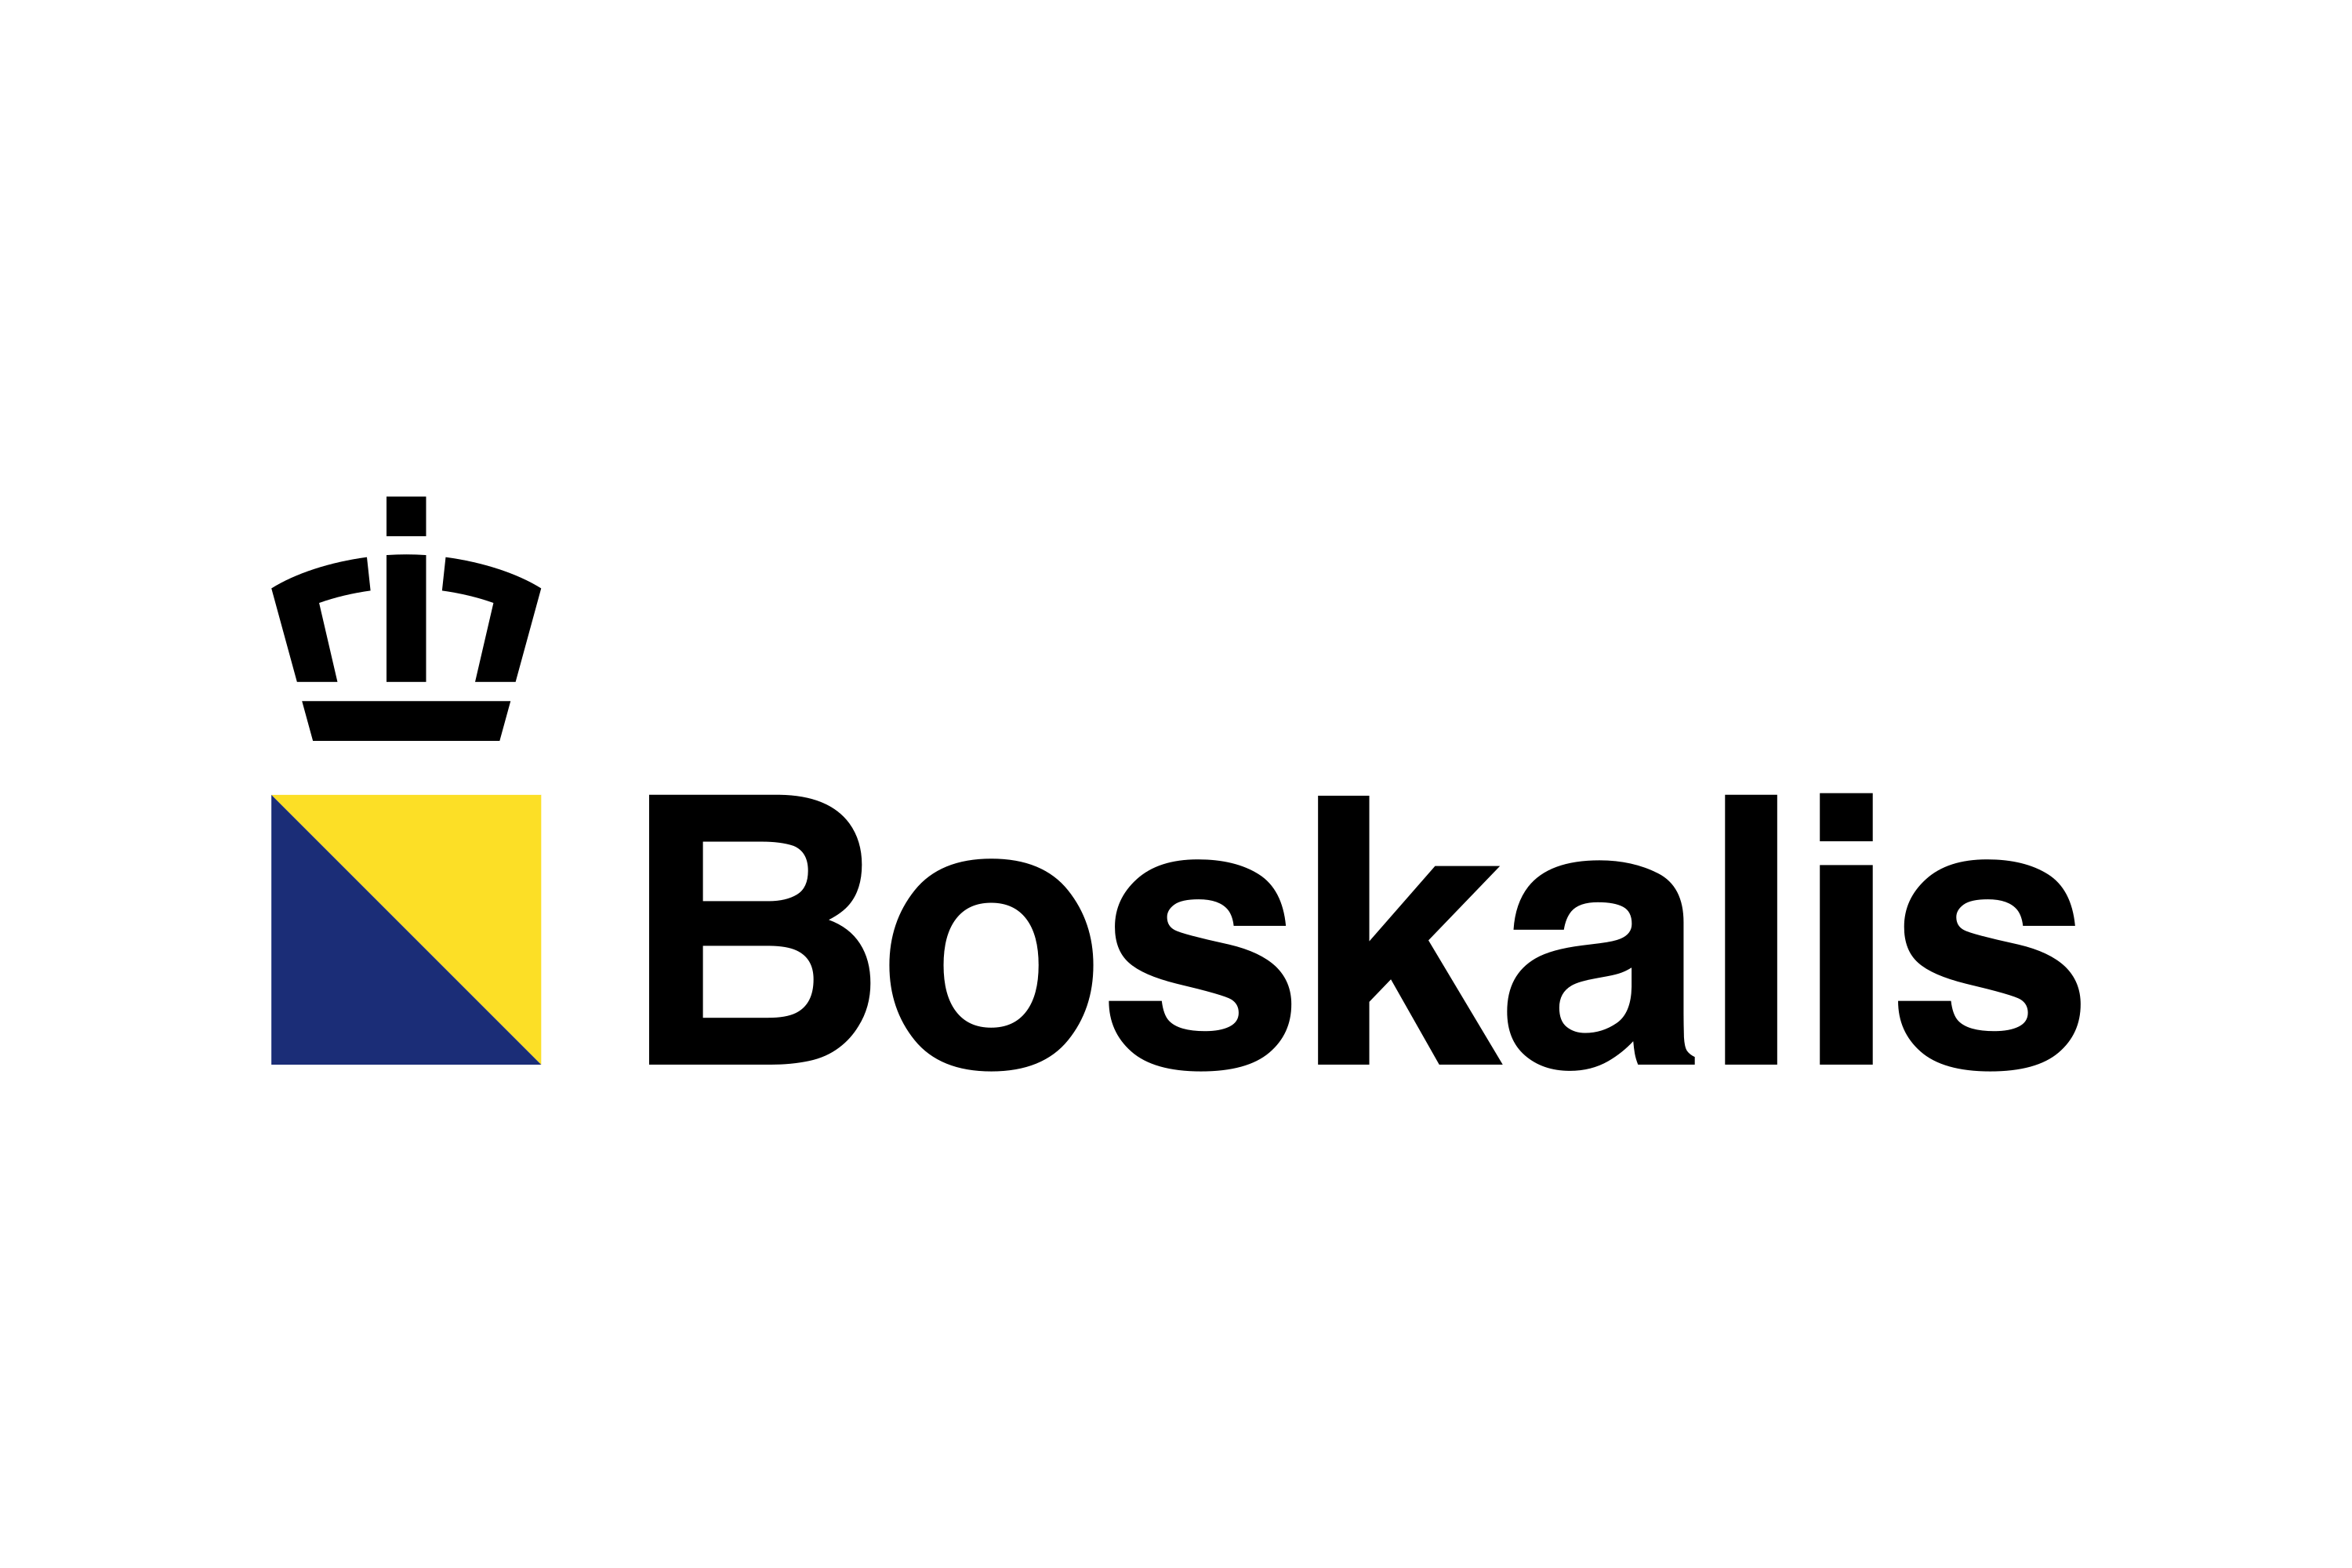 Customer Boskalis